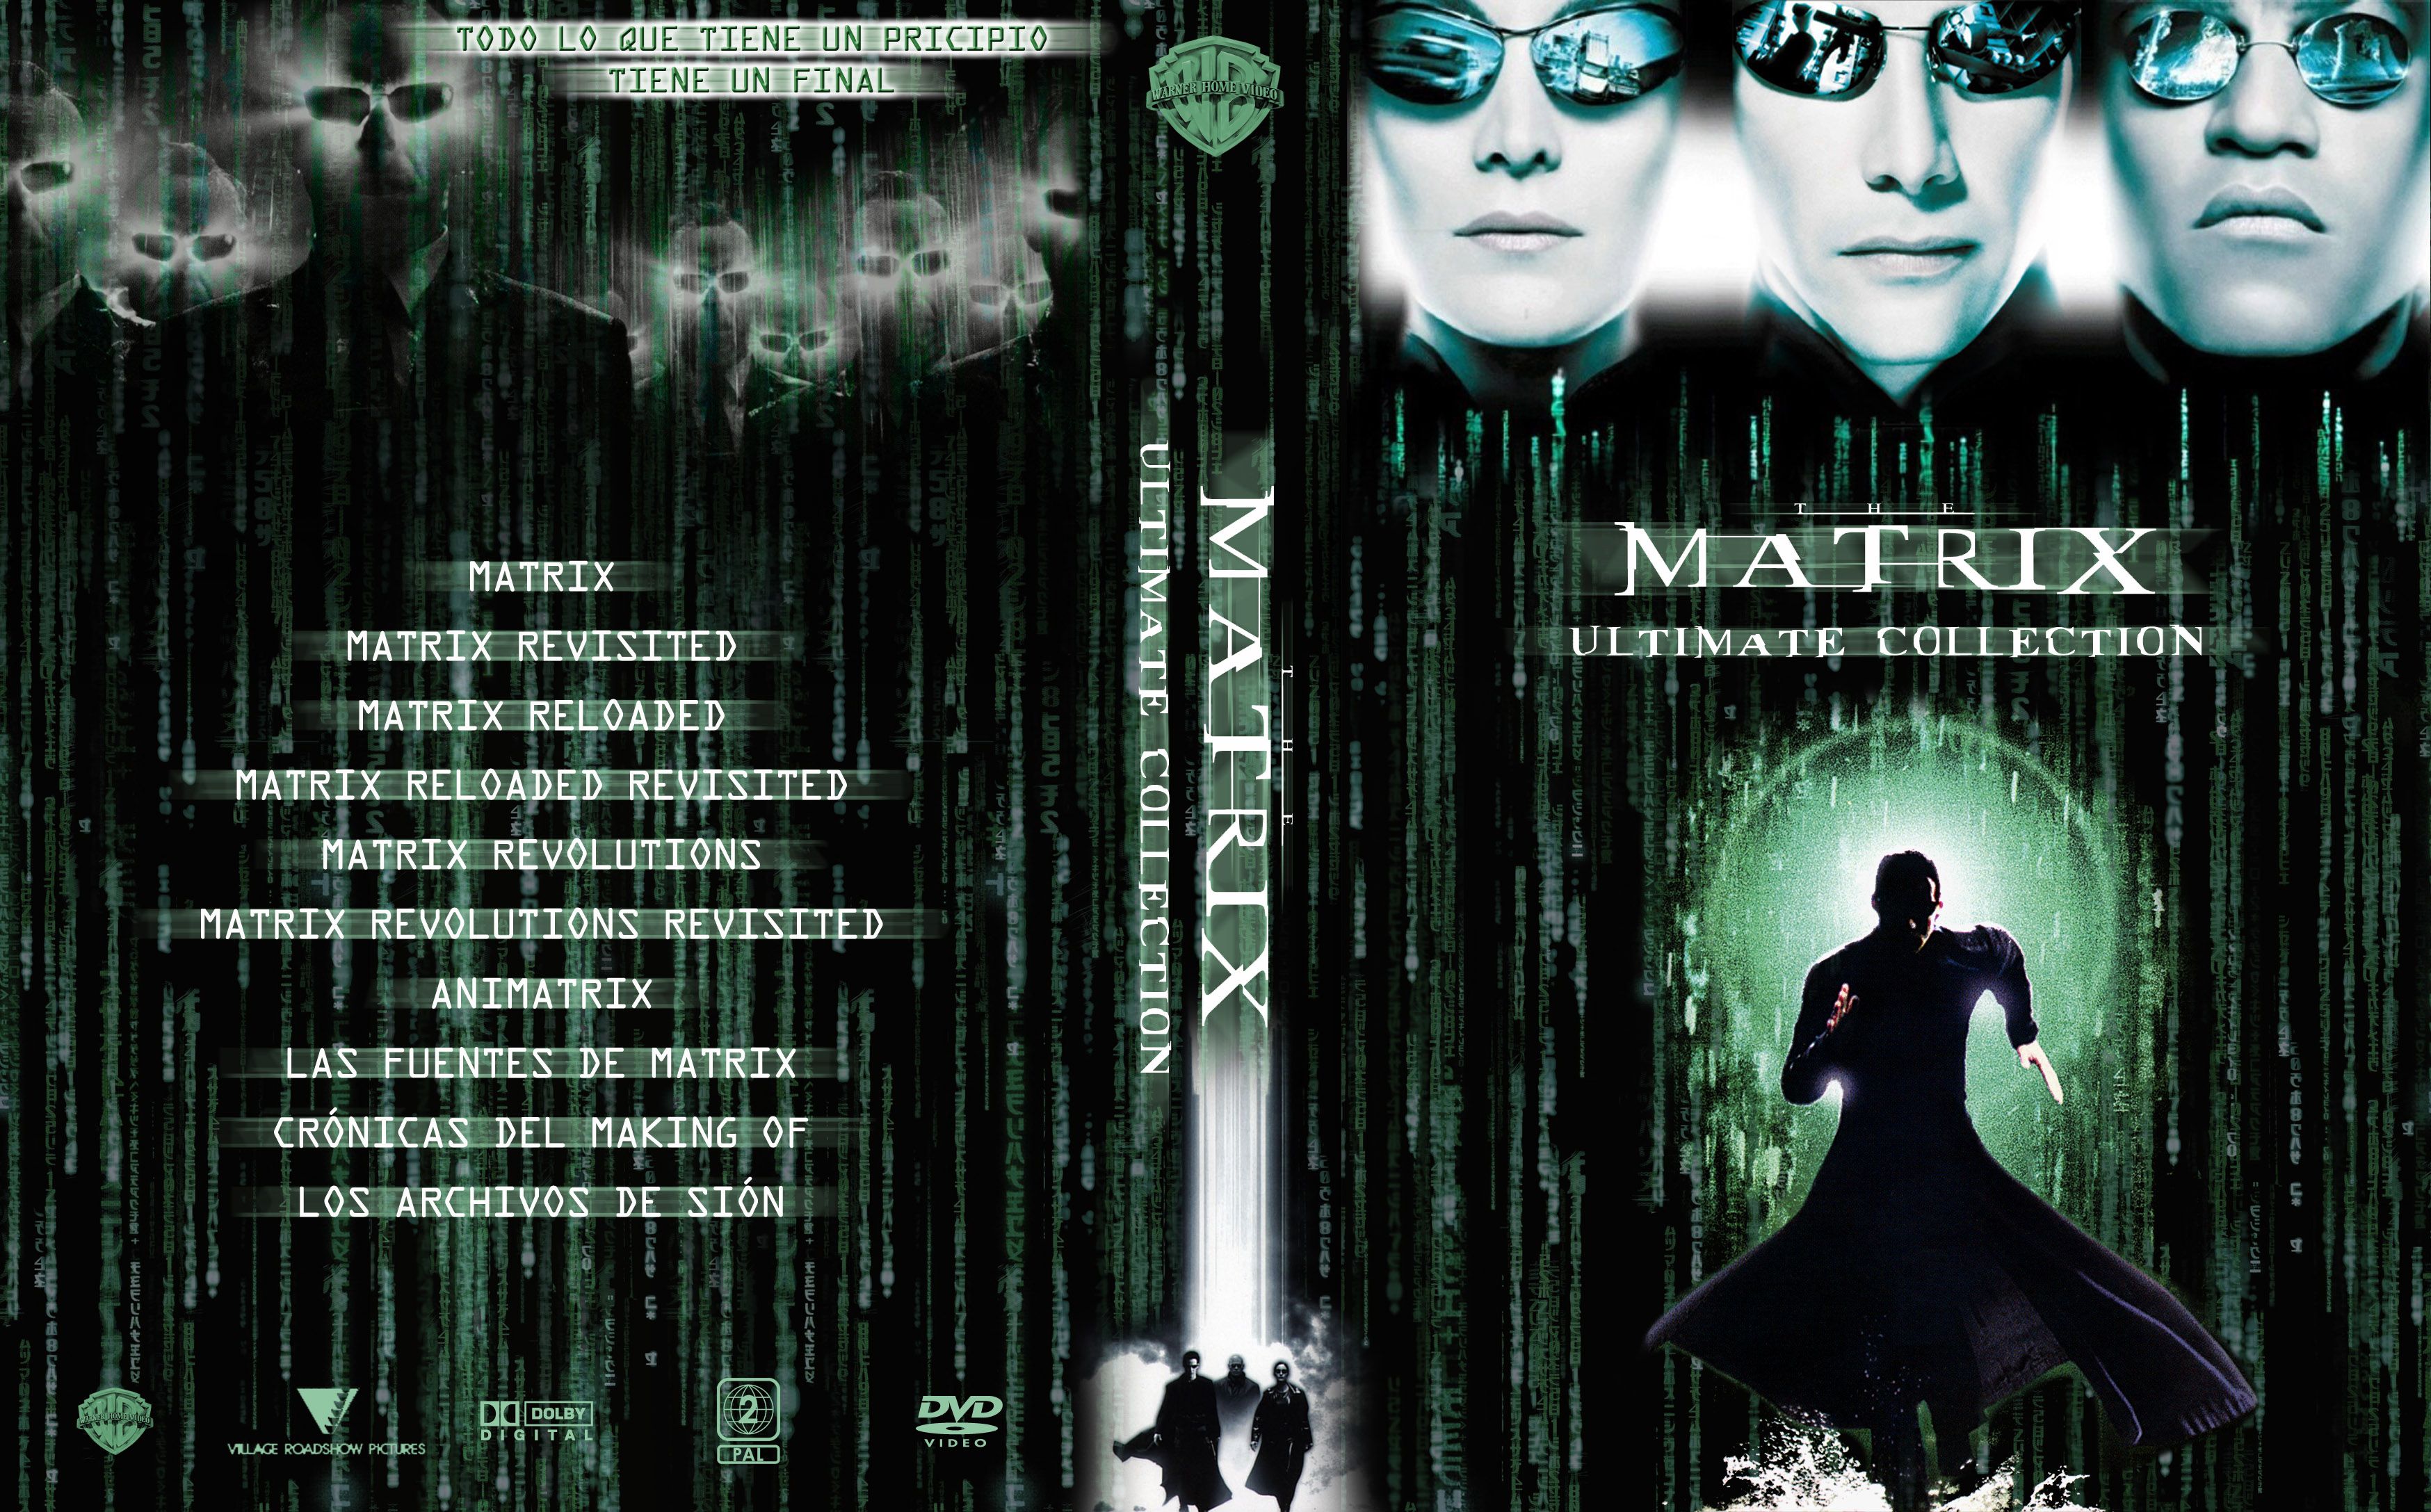 The Matrix - Saga Completa (Colección) 1080p x265 [+EXTRAS]